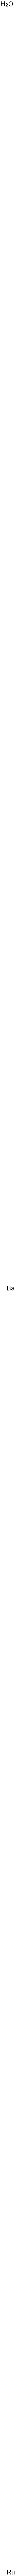 barium ruthenium trioxide|